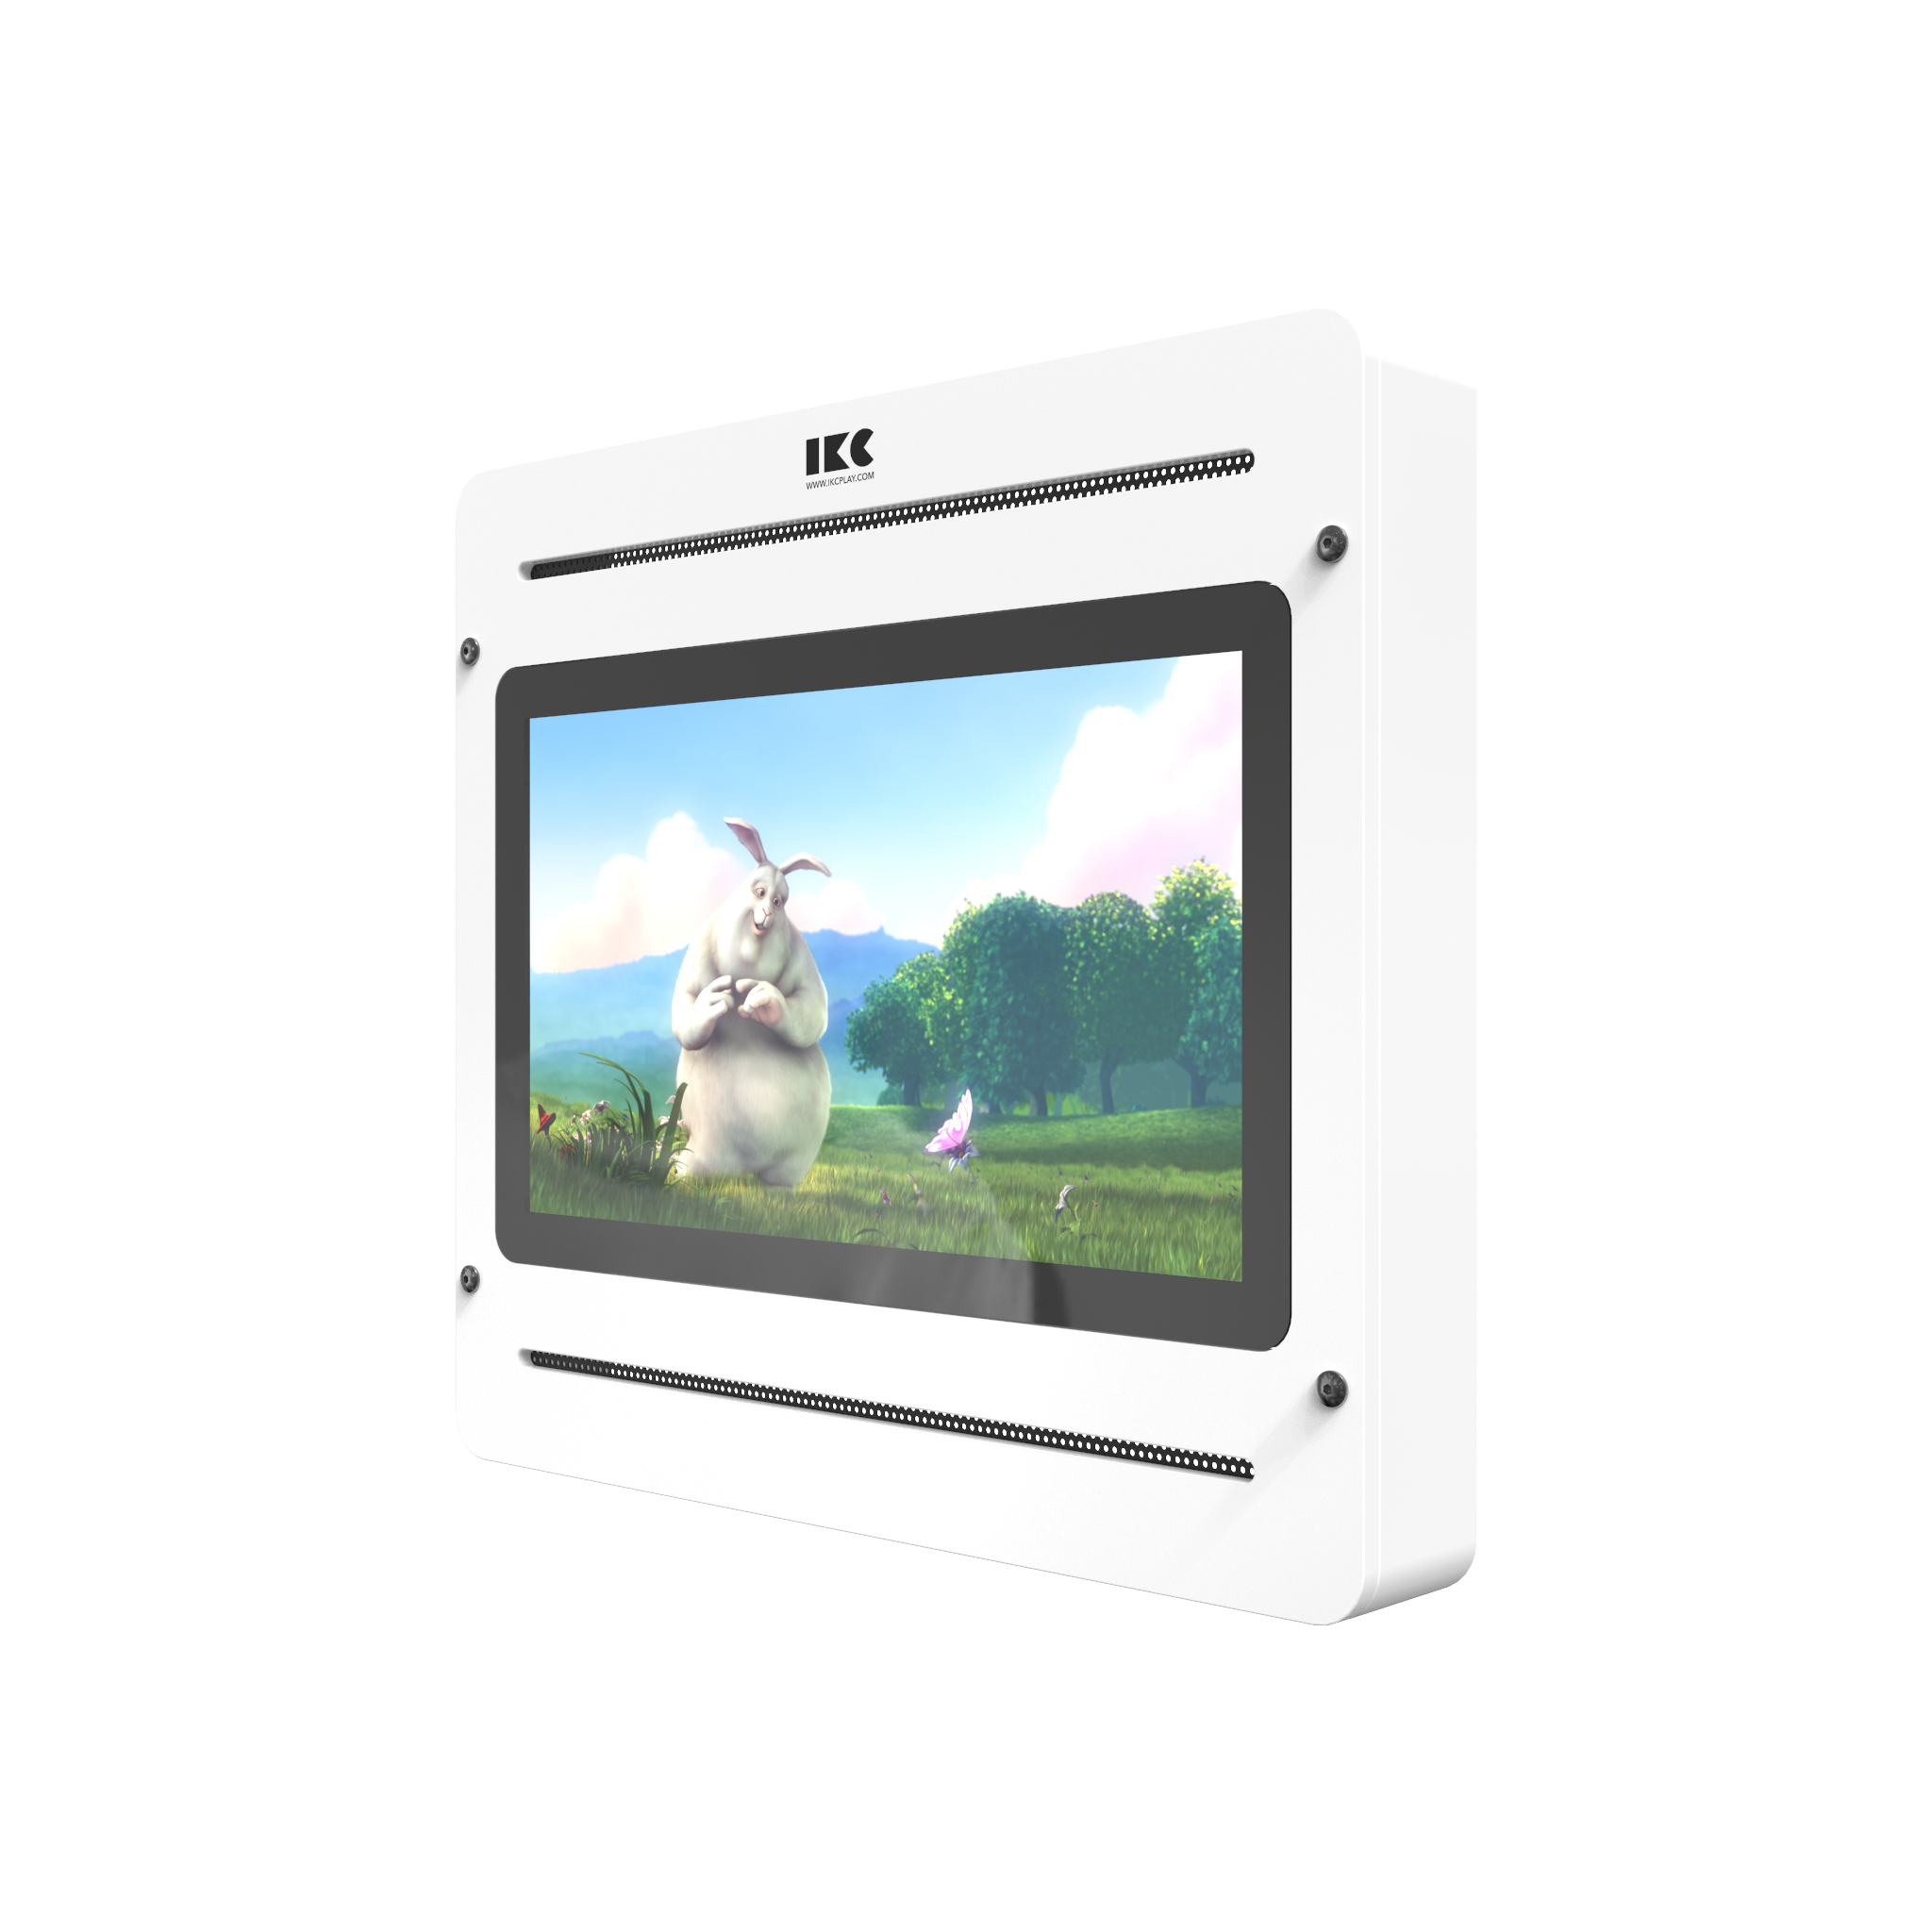 L'image montre un système de jeu interactif Delta 21 inch TV